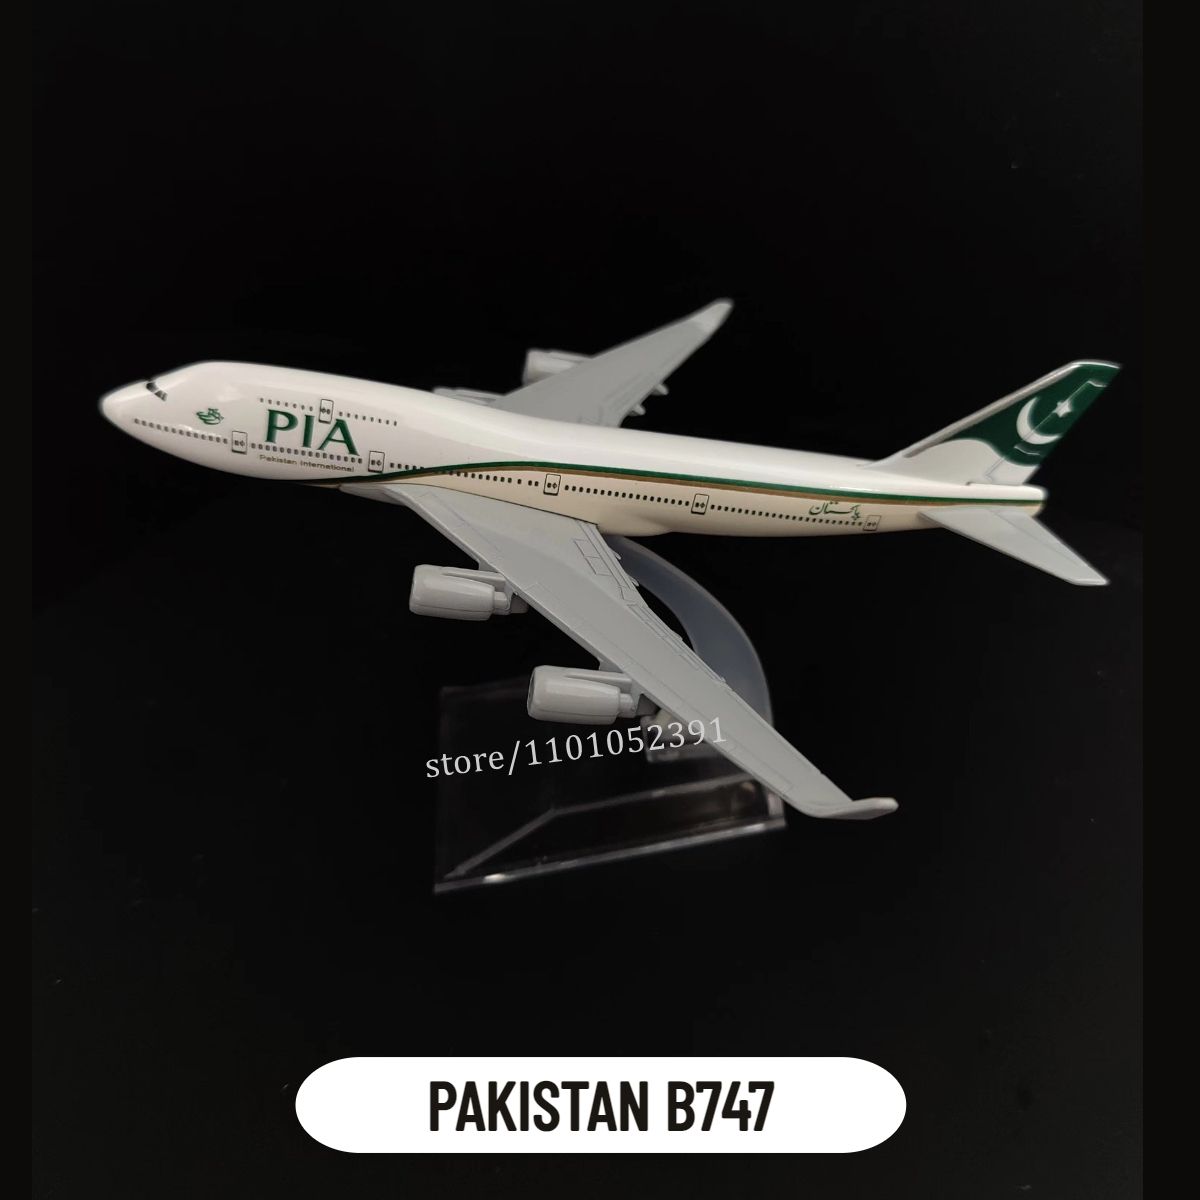 89.Pakistan B747